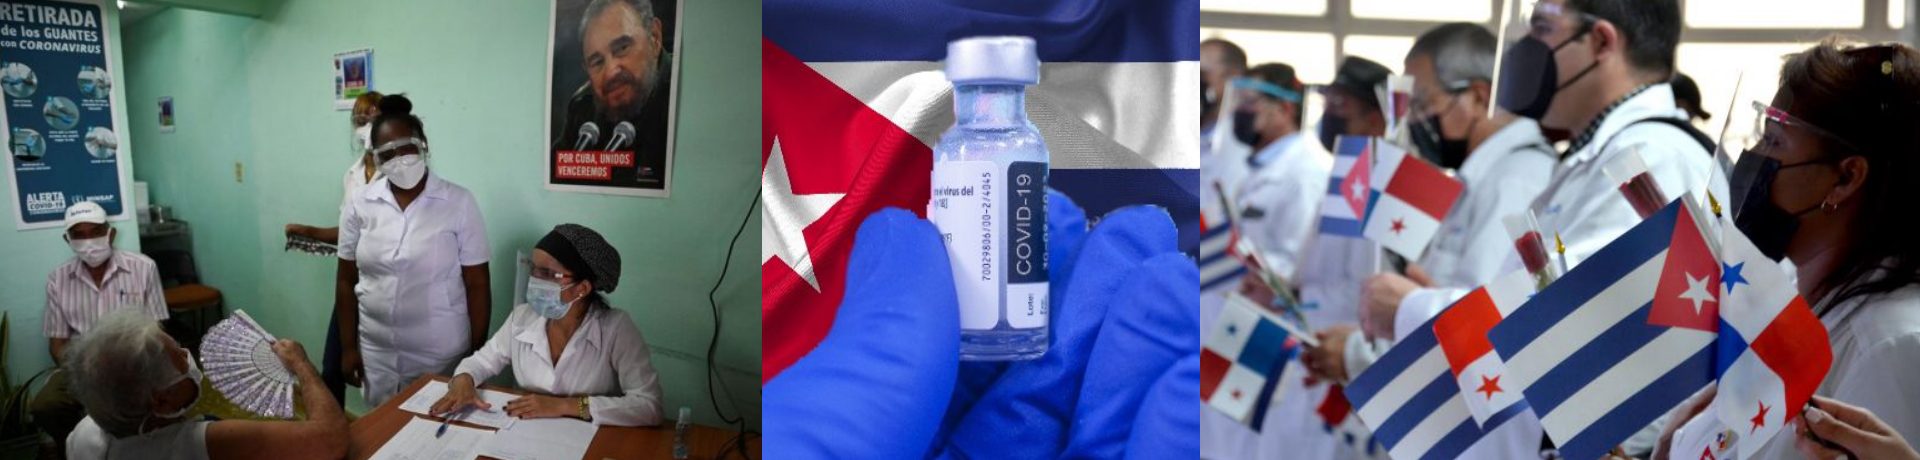 Wie die Internationale Gesellschaft für Menschenrechte (IGFM) berichtet, wird die Gesundheitssituation auf Kuba im Zuge der Corona-Krise immer dramatischer. Die in Frankfurt ansässige Menschenrechtsorganisation, die mit einer Sektion auf Kuba vertreten ist, erhält immer wieder erschütternde Berichte über das überlastete Gesundheitssystem der Karibikinsel.